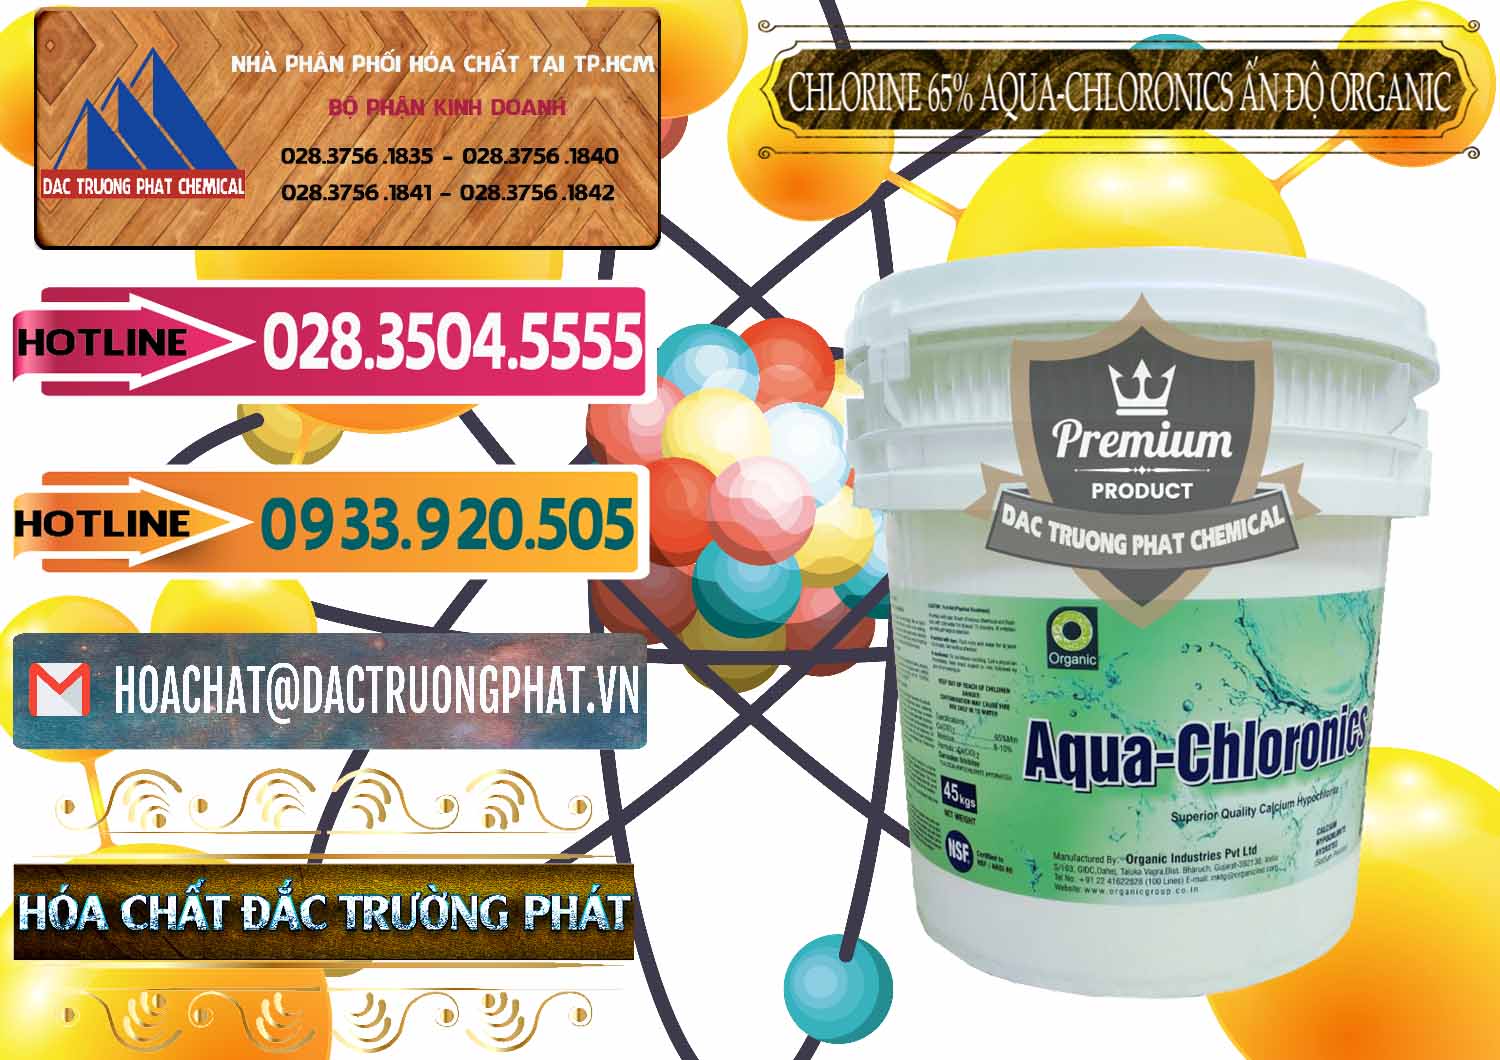 Công ty chuyên cung ứng và bán Chlorine – Clorin 65% Aqua-Chloronics Ấn Độ Organic India - 0210 - Cty nhập khẩu & cung cấp hóa chất tại TP.HCM - dactruongphat.vn